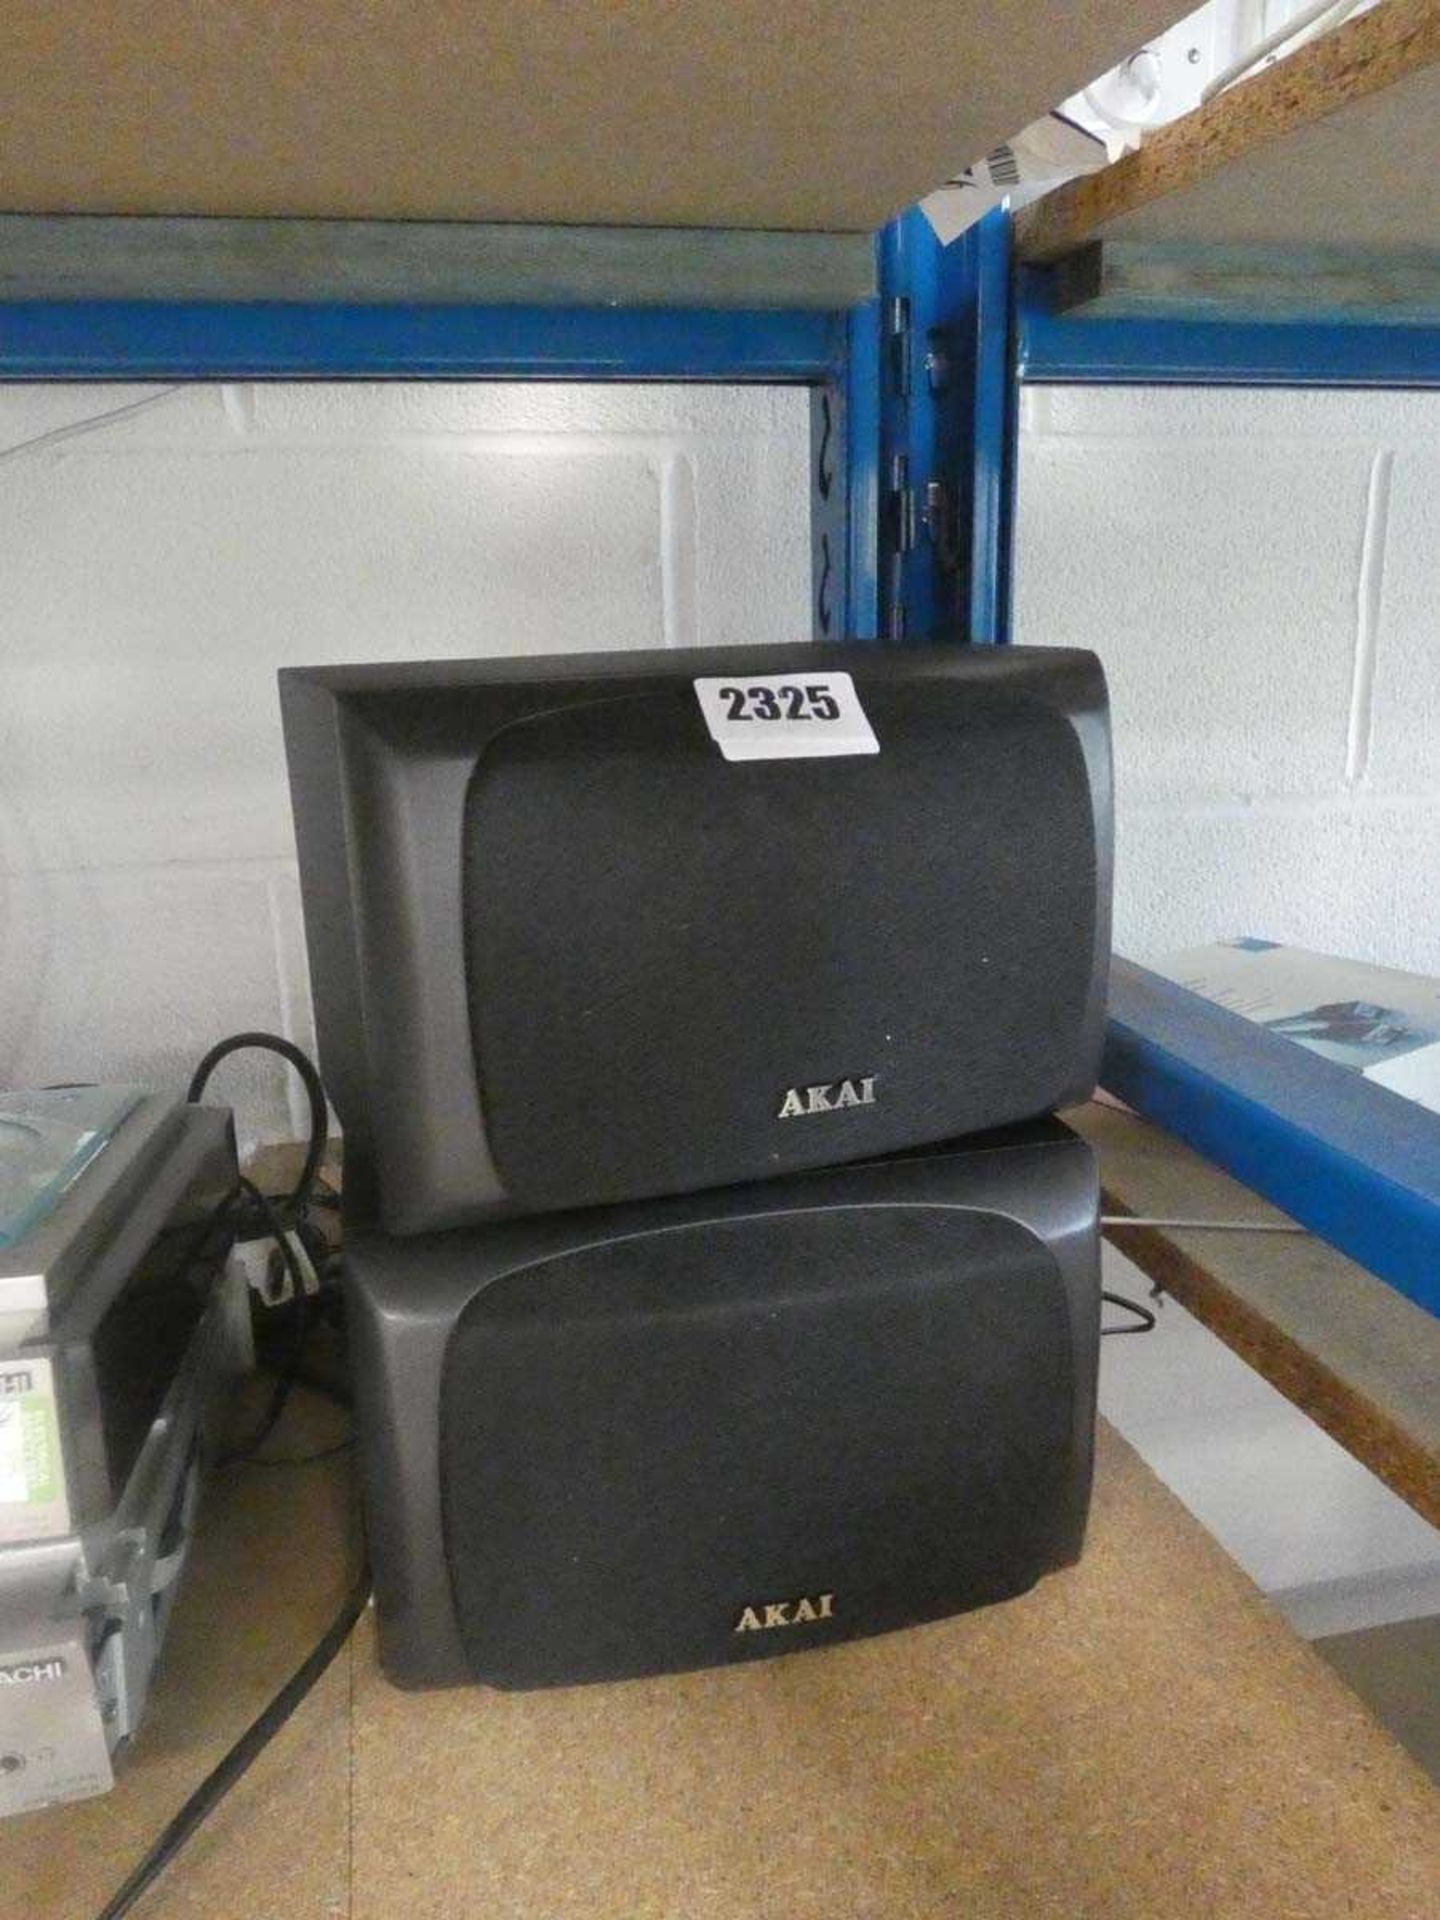 Two Akai satellite speakers